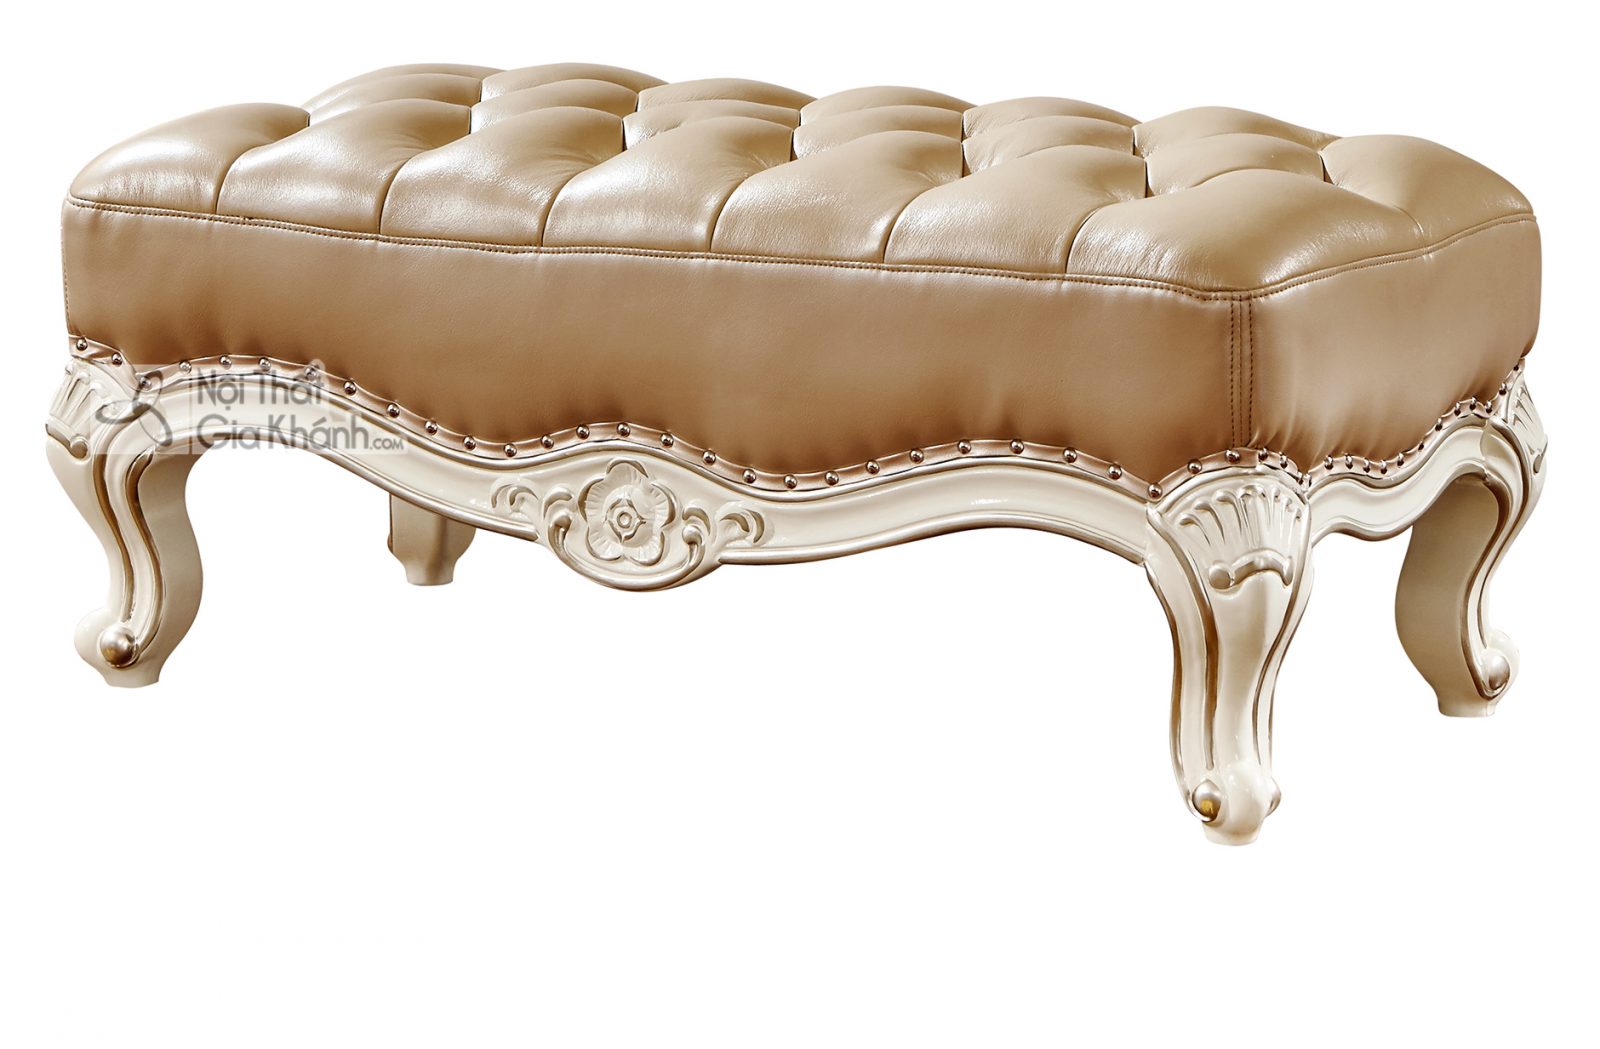 Đôn sofa chữ nhật Tân cổ điển màu trắng ngọc trai DS8802H phong cách Hoàng Gia